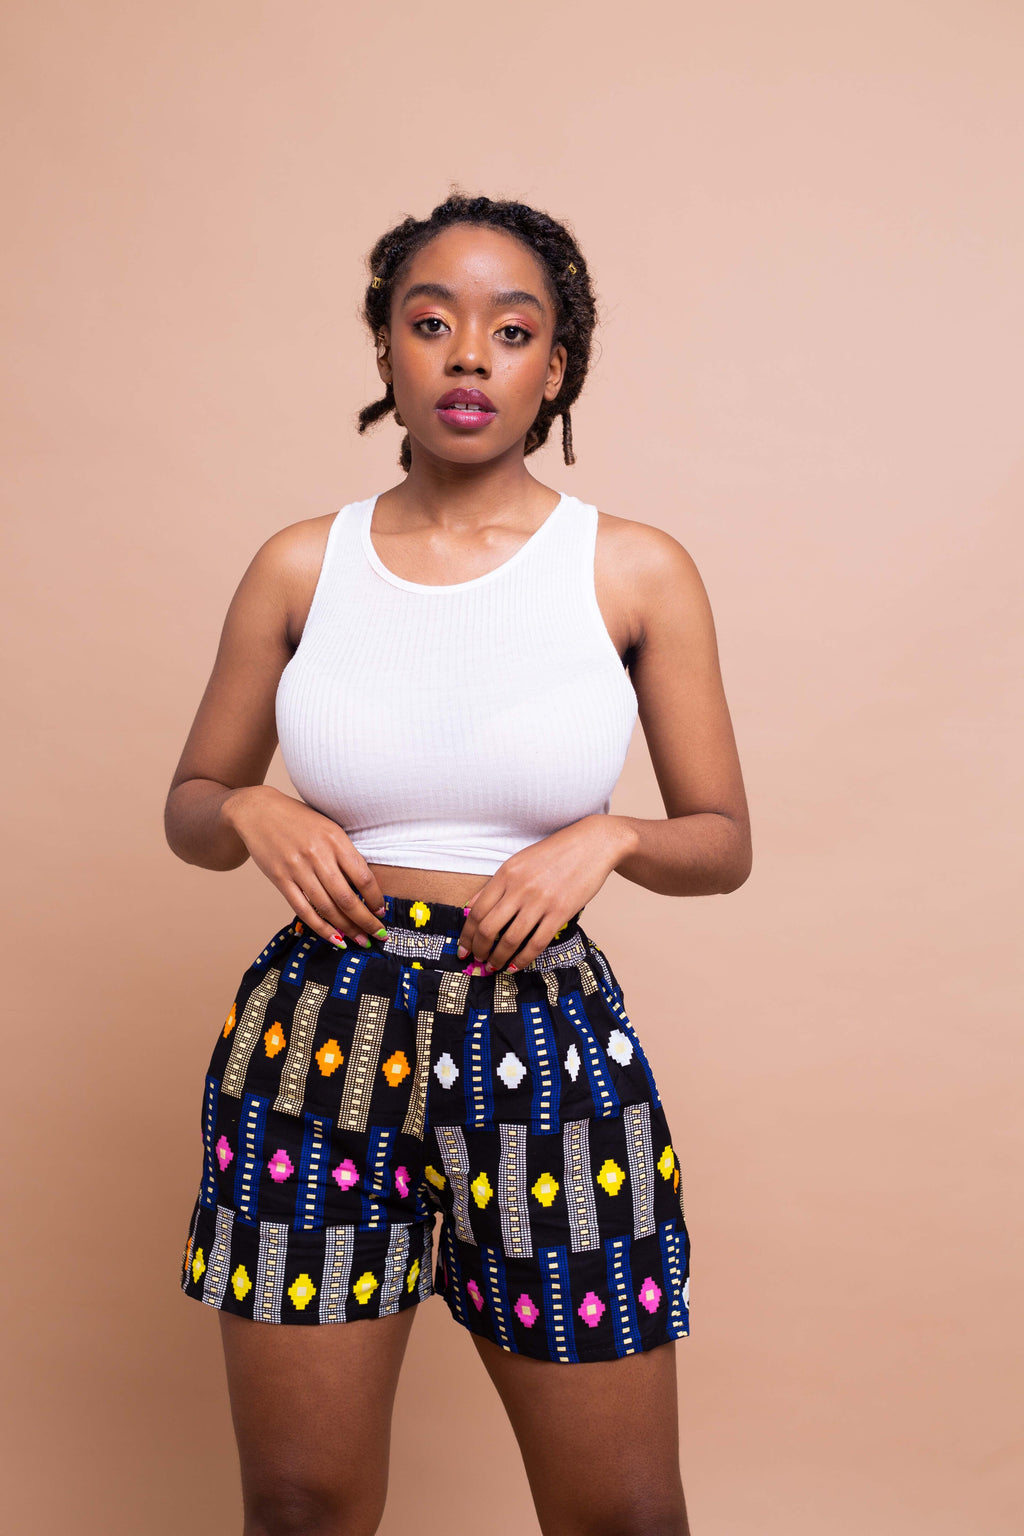 Tanya Ankara High Waisted Shorts | Black and Blue Multicolored African Print